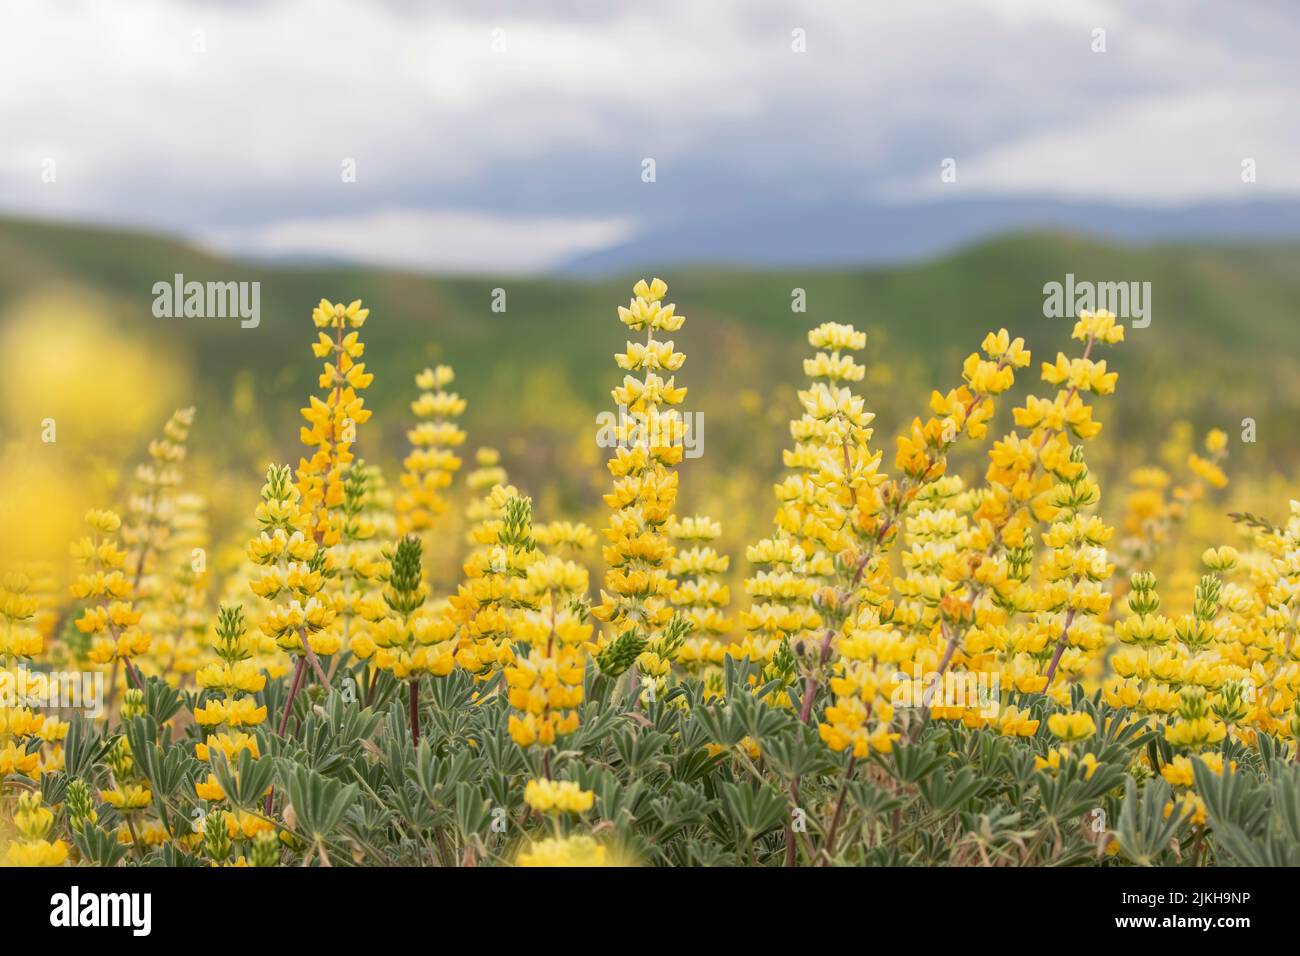 Eine Nahaufnahme von schönen gelben Blumen auf dem Feld an einem bewölkten Tag Stockfoto